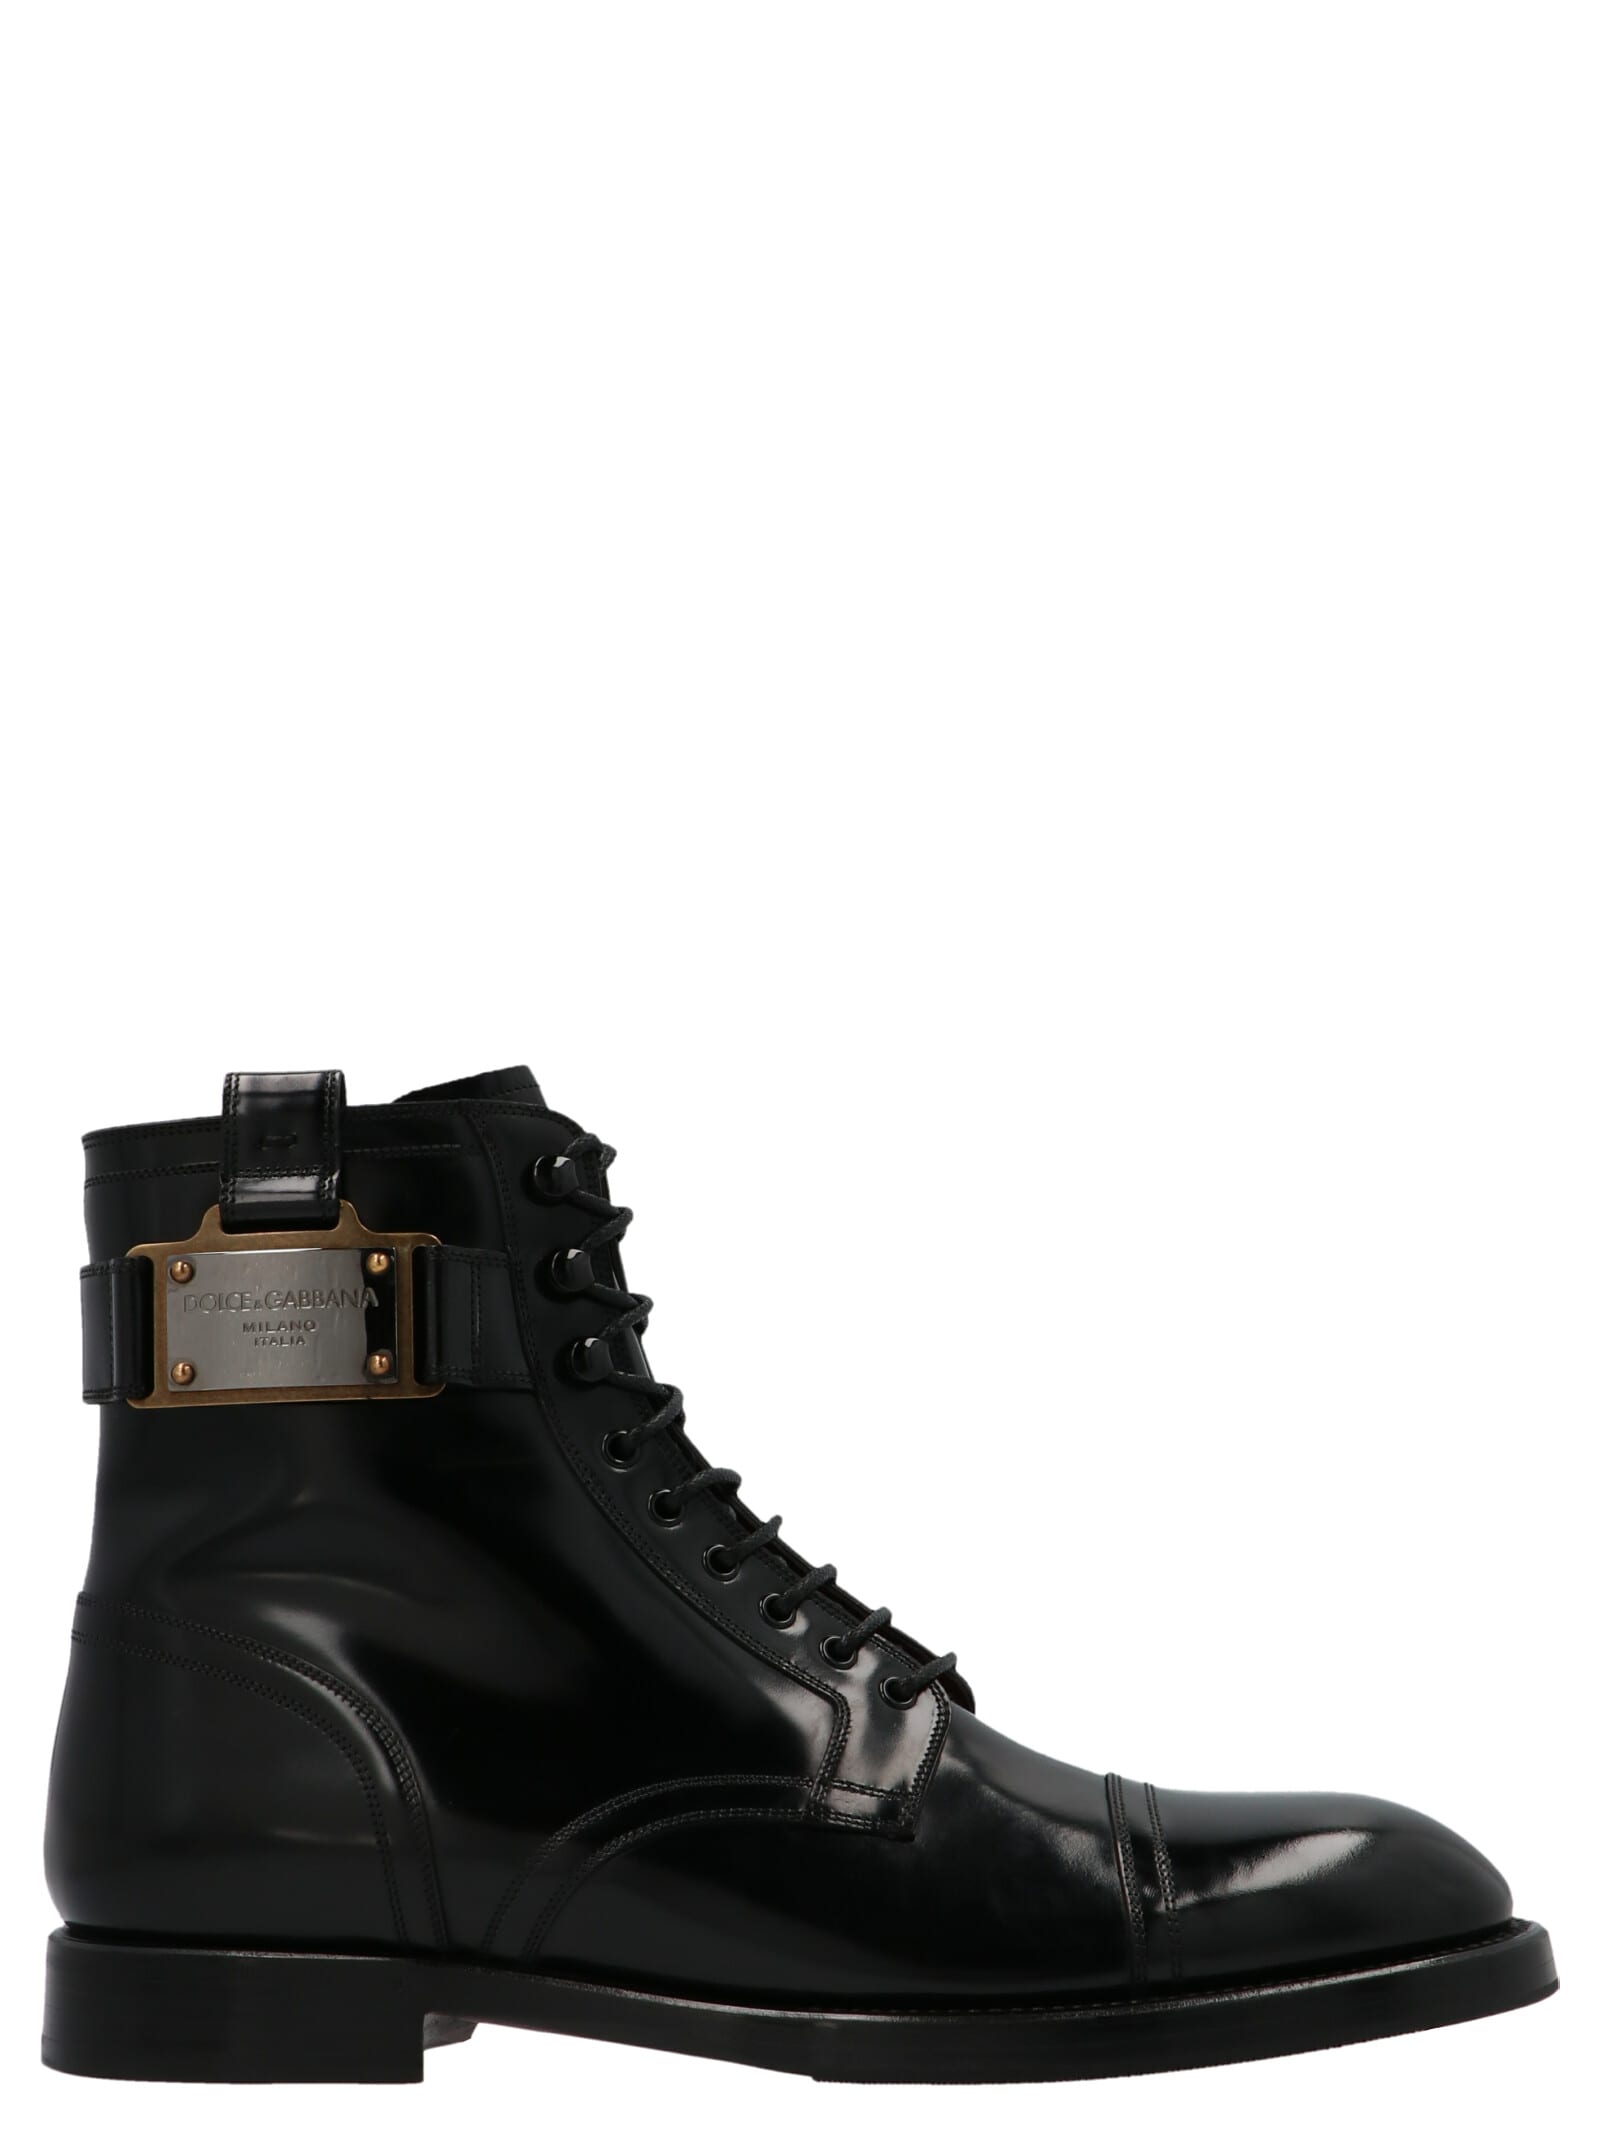 Dolce & Gabbana Logo Buckle Combat Boots